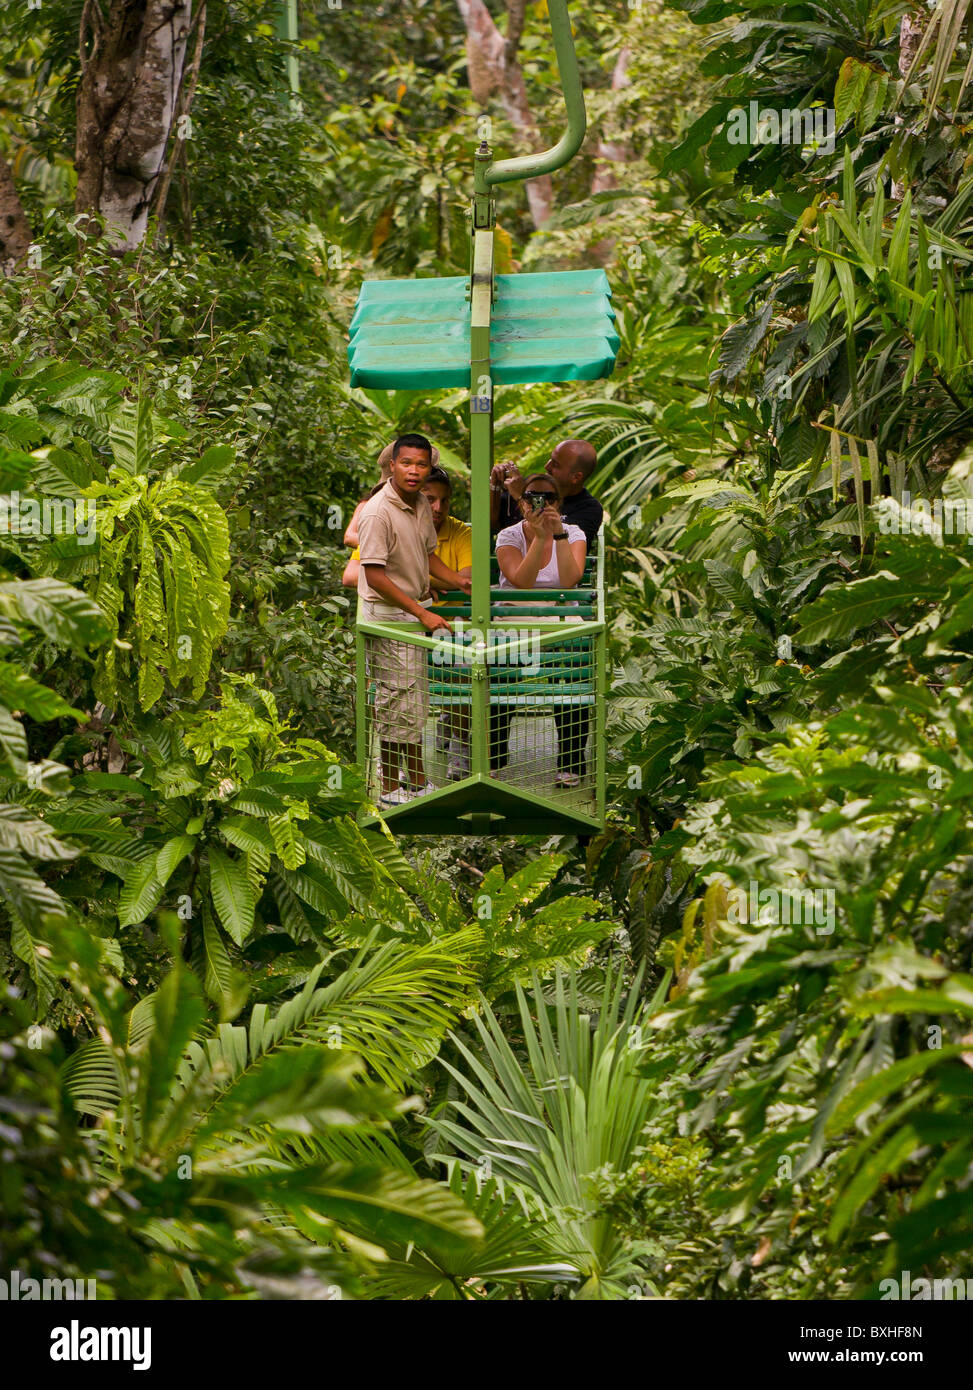 GAMBOA, PANAMA - turisti e guida in aerial tram teleferico nella giungla di Gamboa Rainforest Resort. Foto Stock